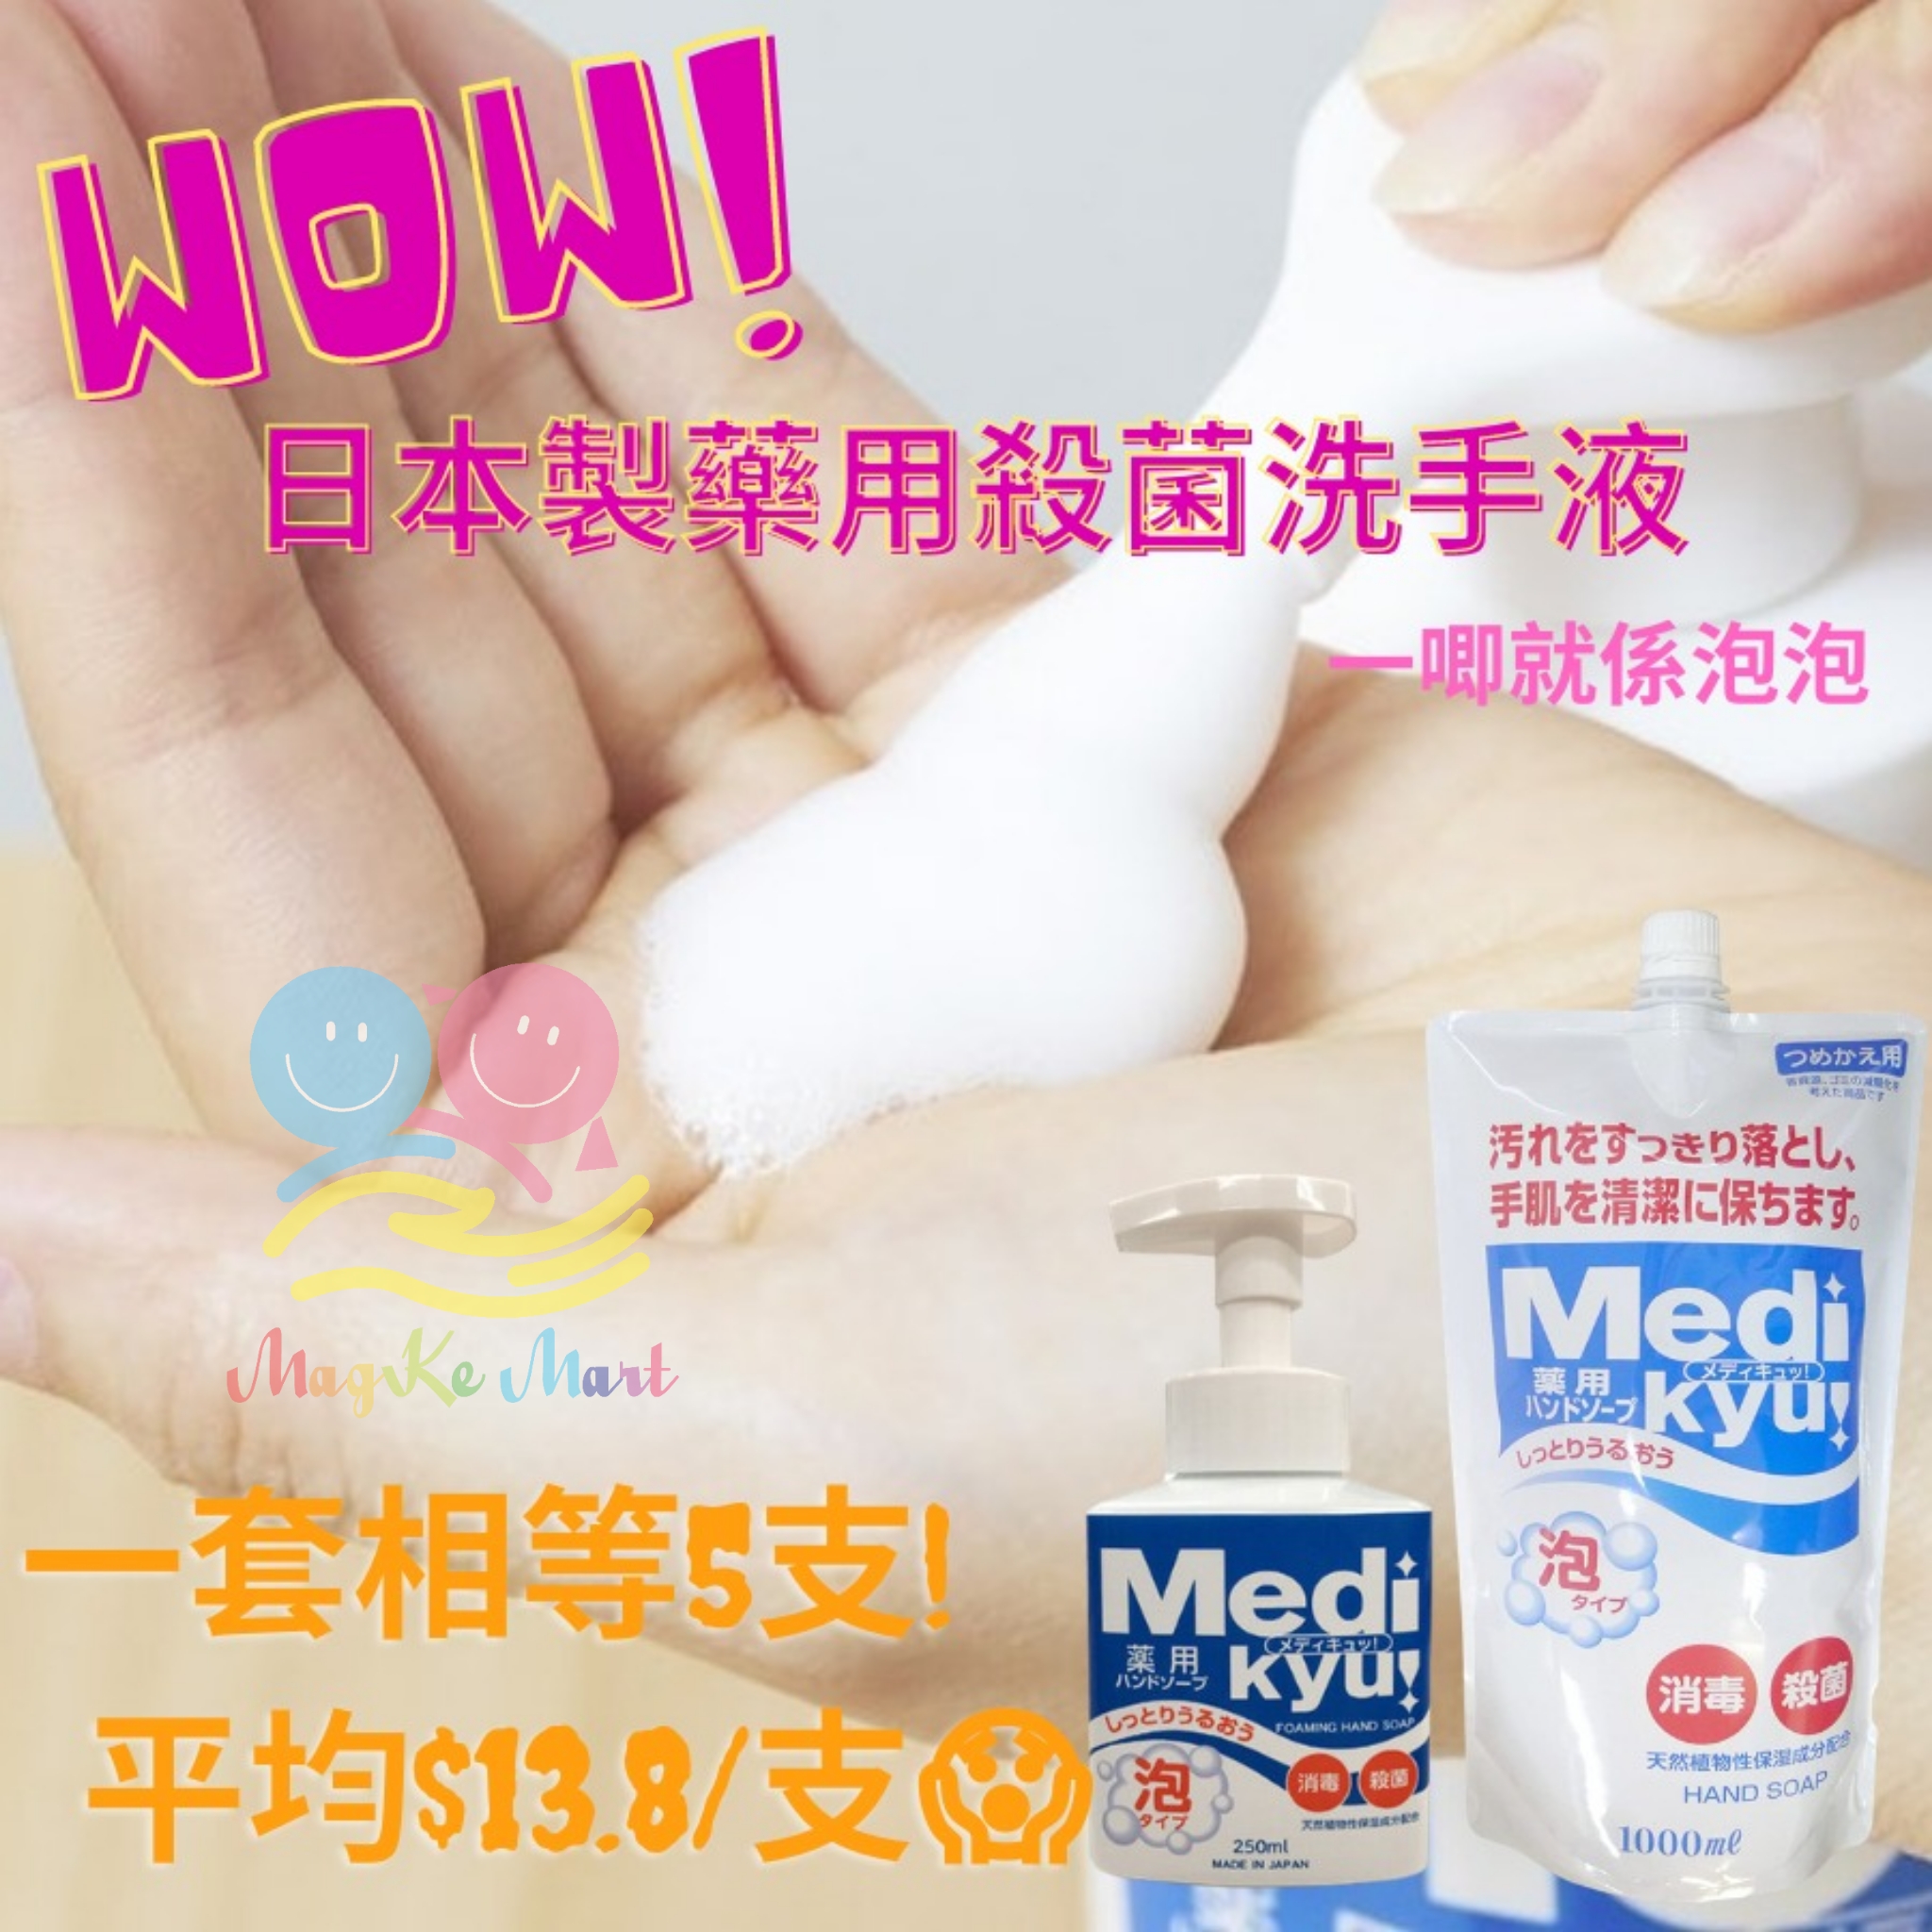 日本 MEDI KYU 藥用消毒殺菌泡泡洗手液套裝